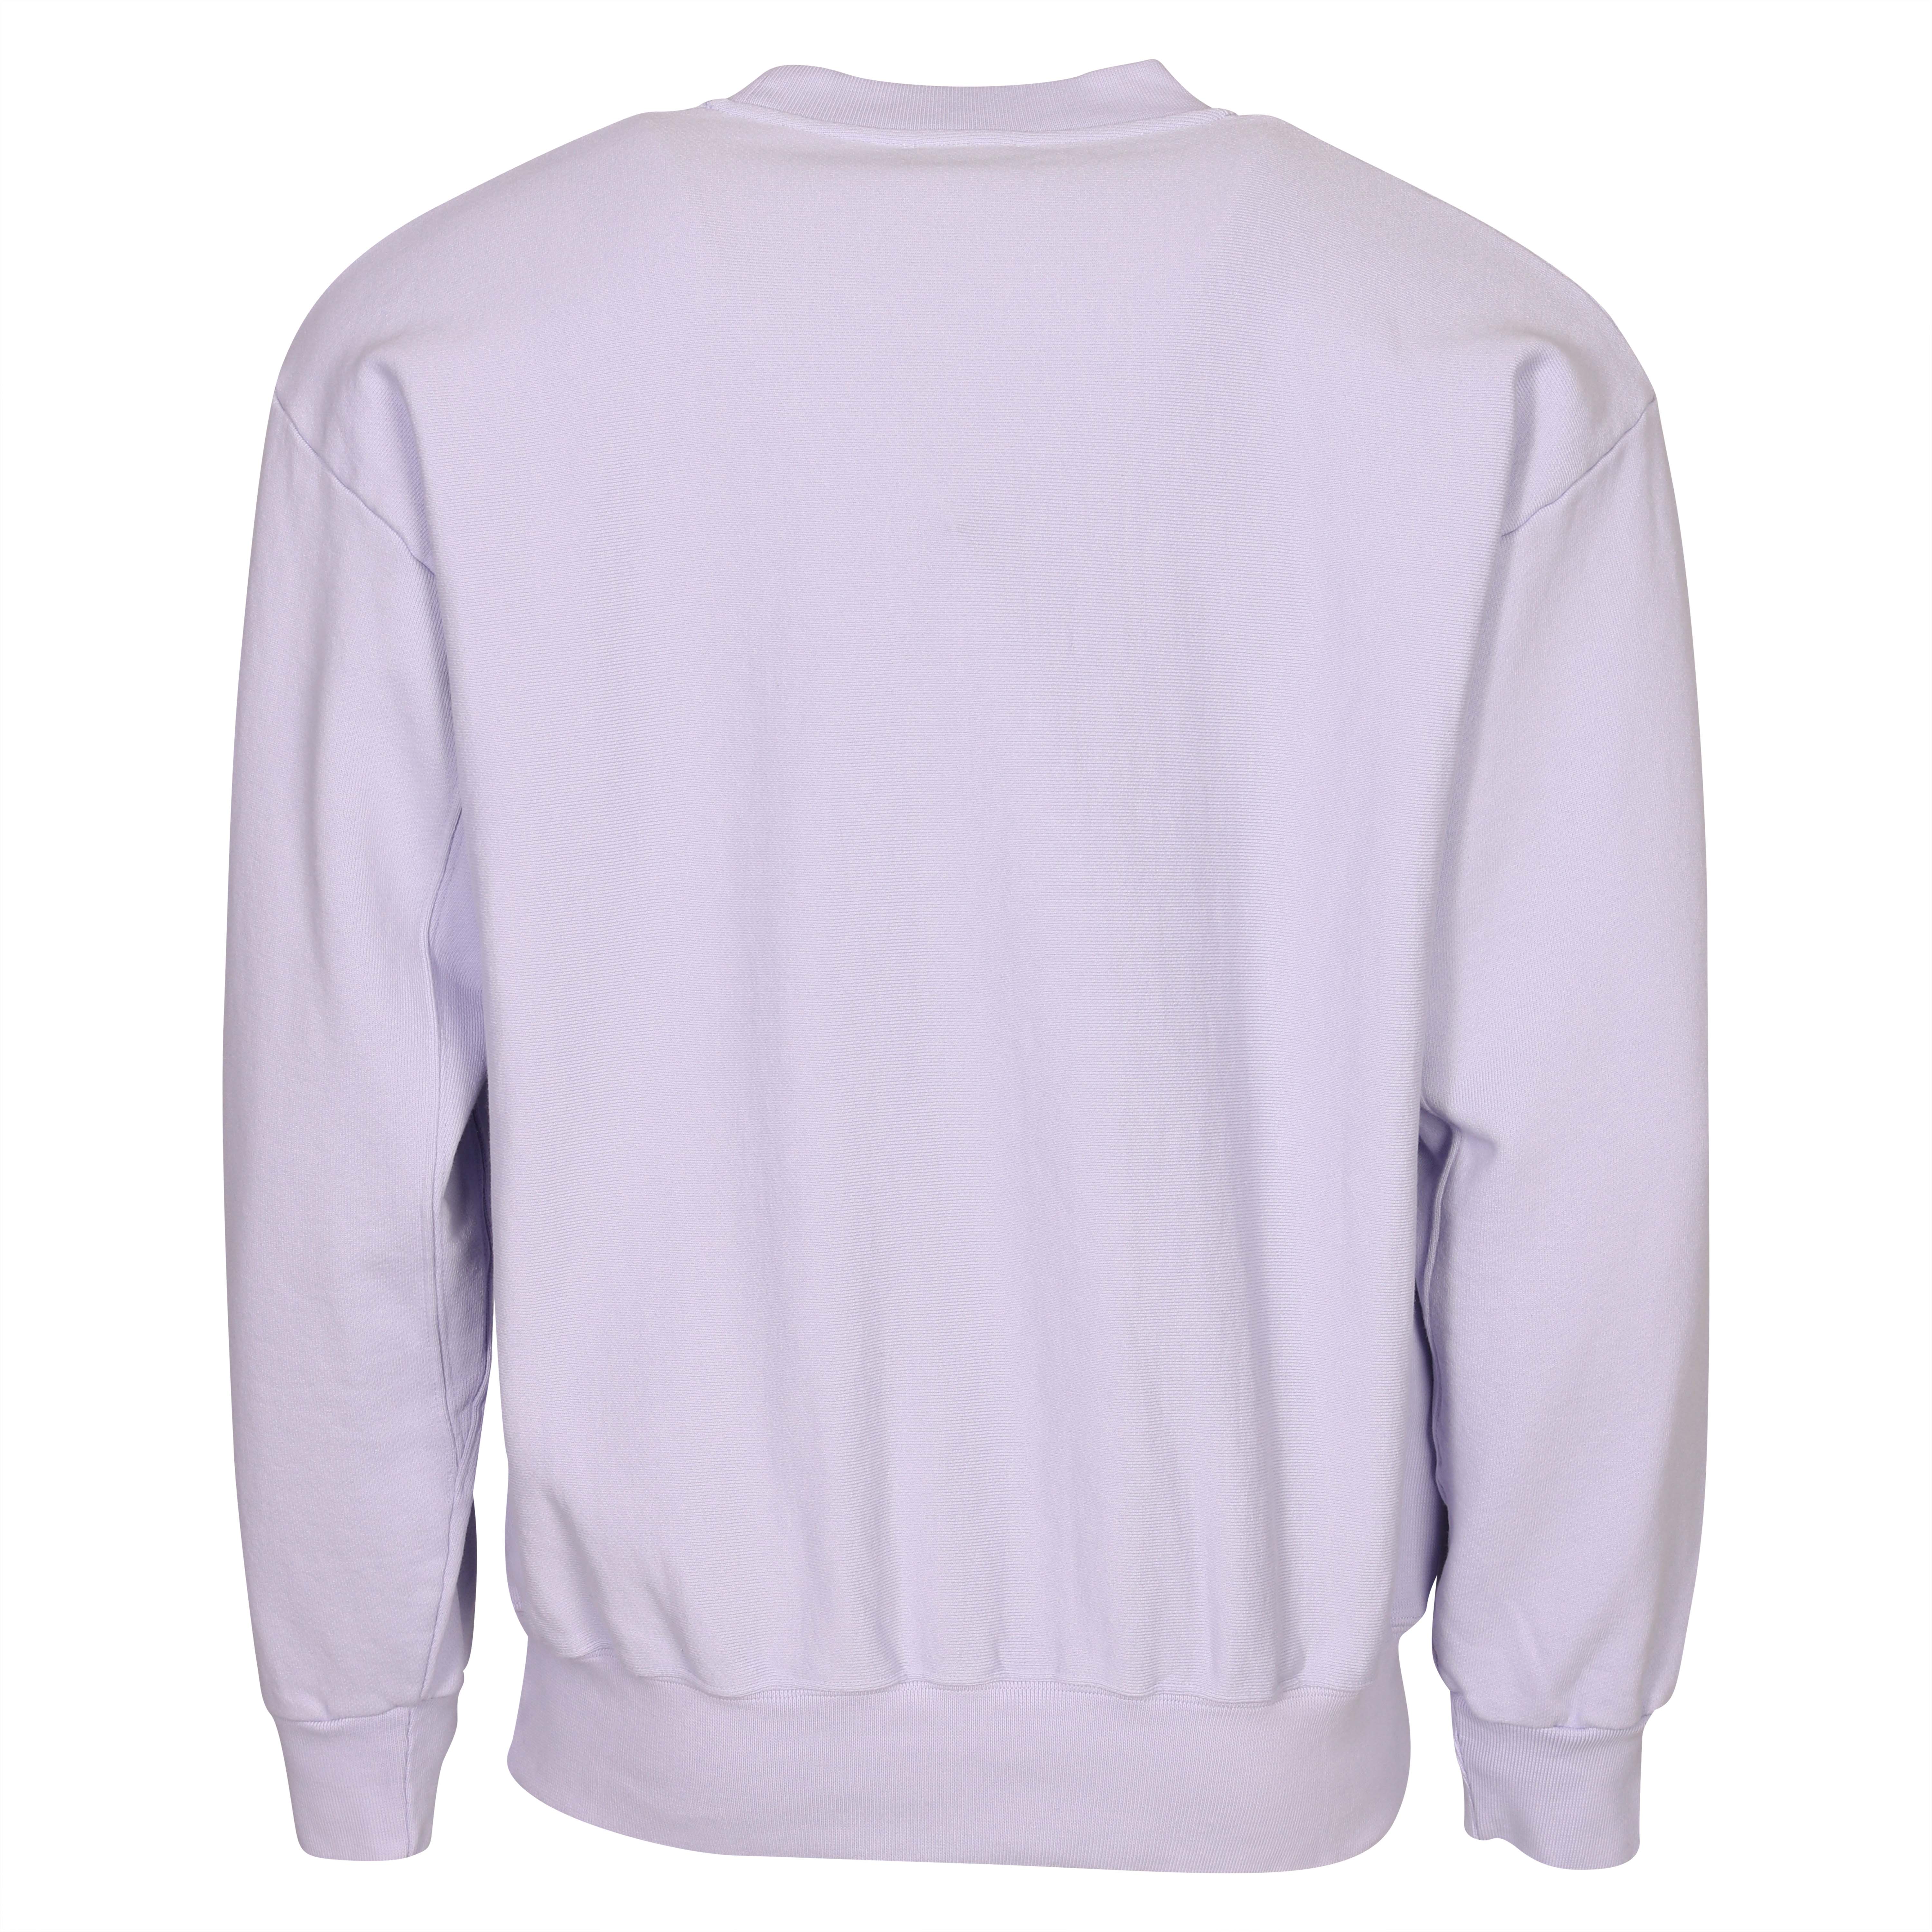 Unisex Aries Premium Temple Sweatshirt in Lilac